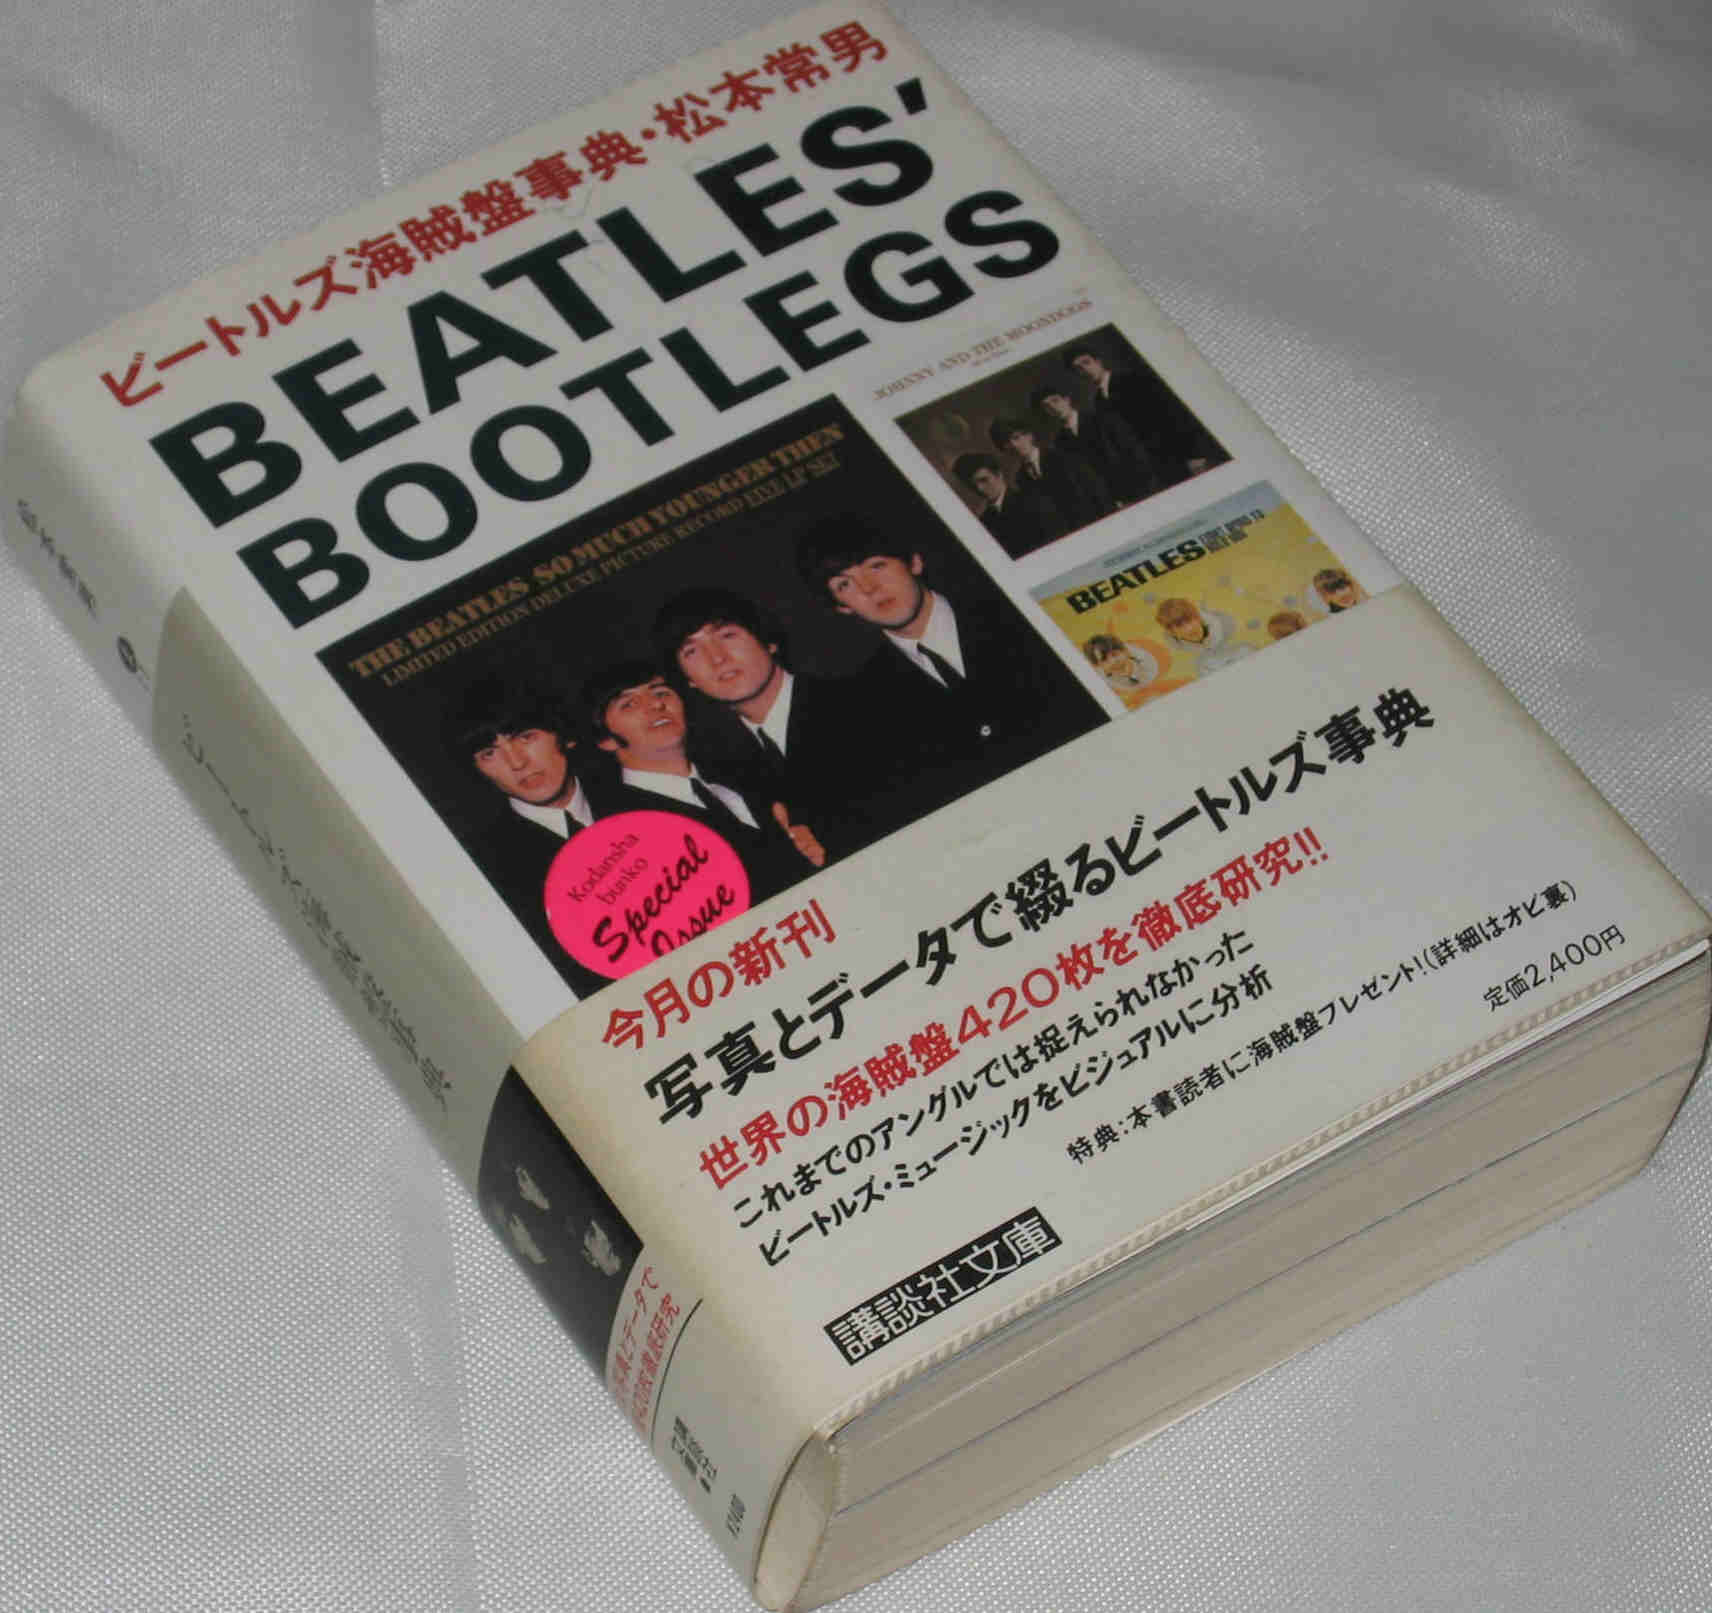 ビートルズ海賊盤事典 | A Collection of Beatles